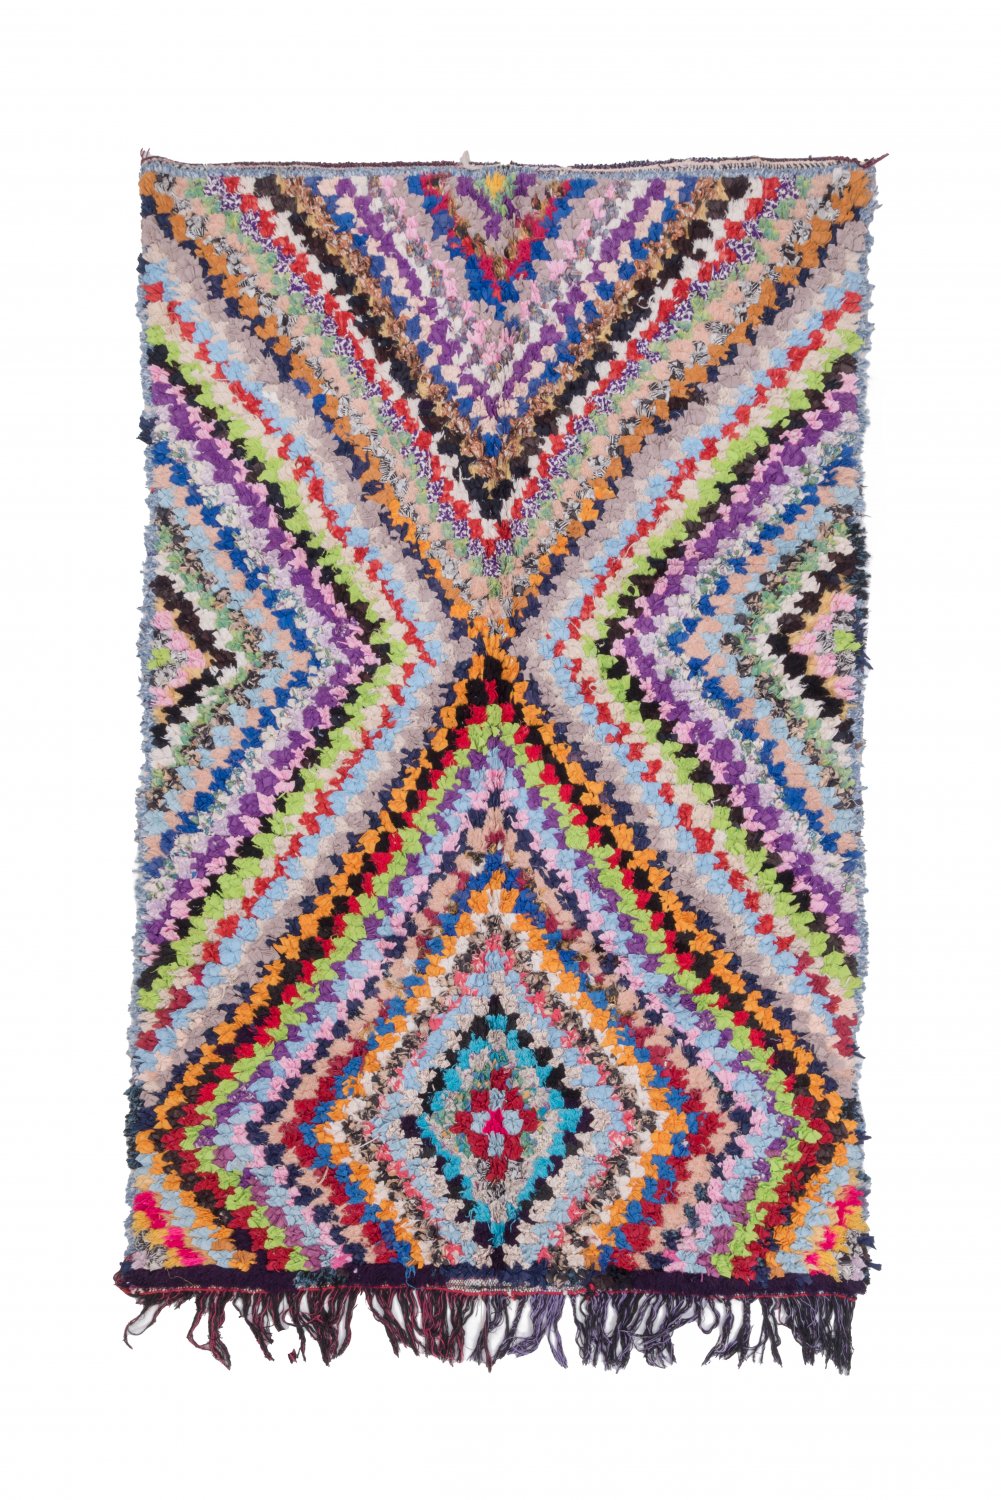 Moroccan Berber rug Boucherouite 225 x 140 cm